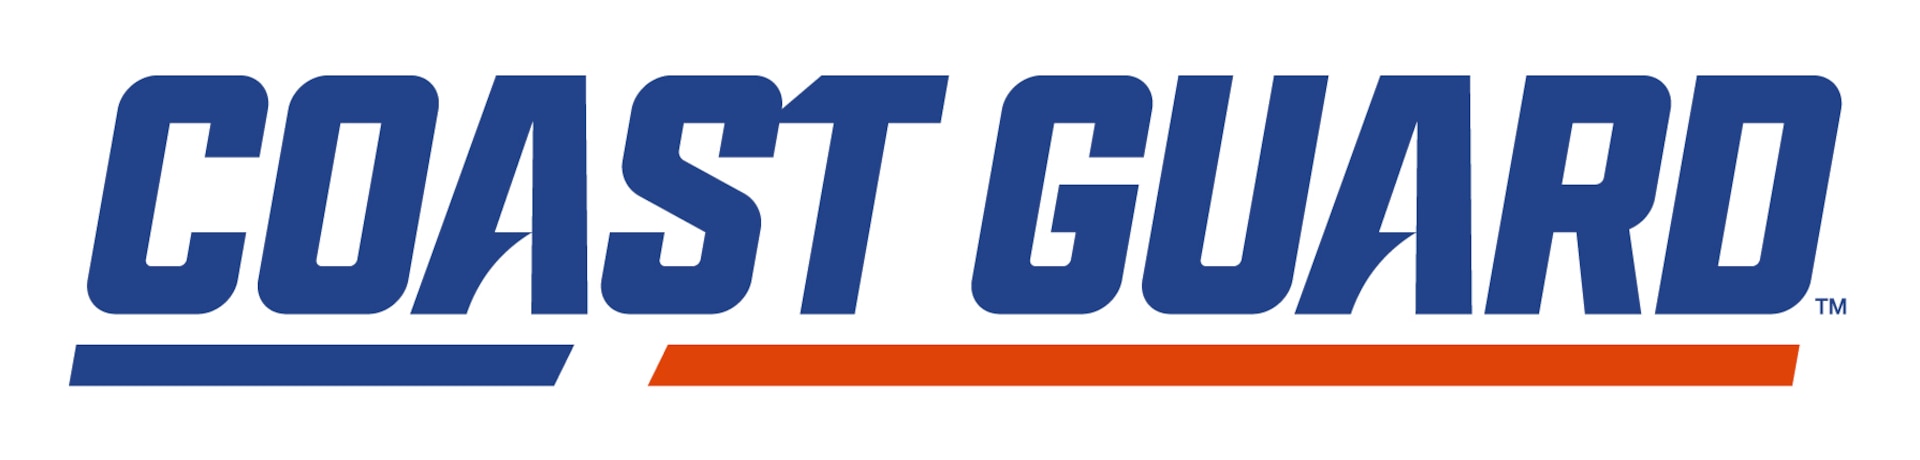 Coast Guard Academy Unveils New Athletics Logos > United States Coast ...